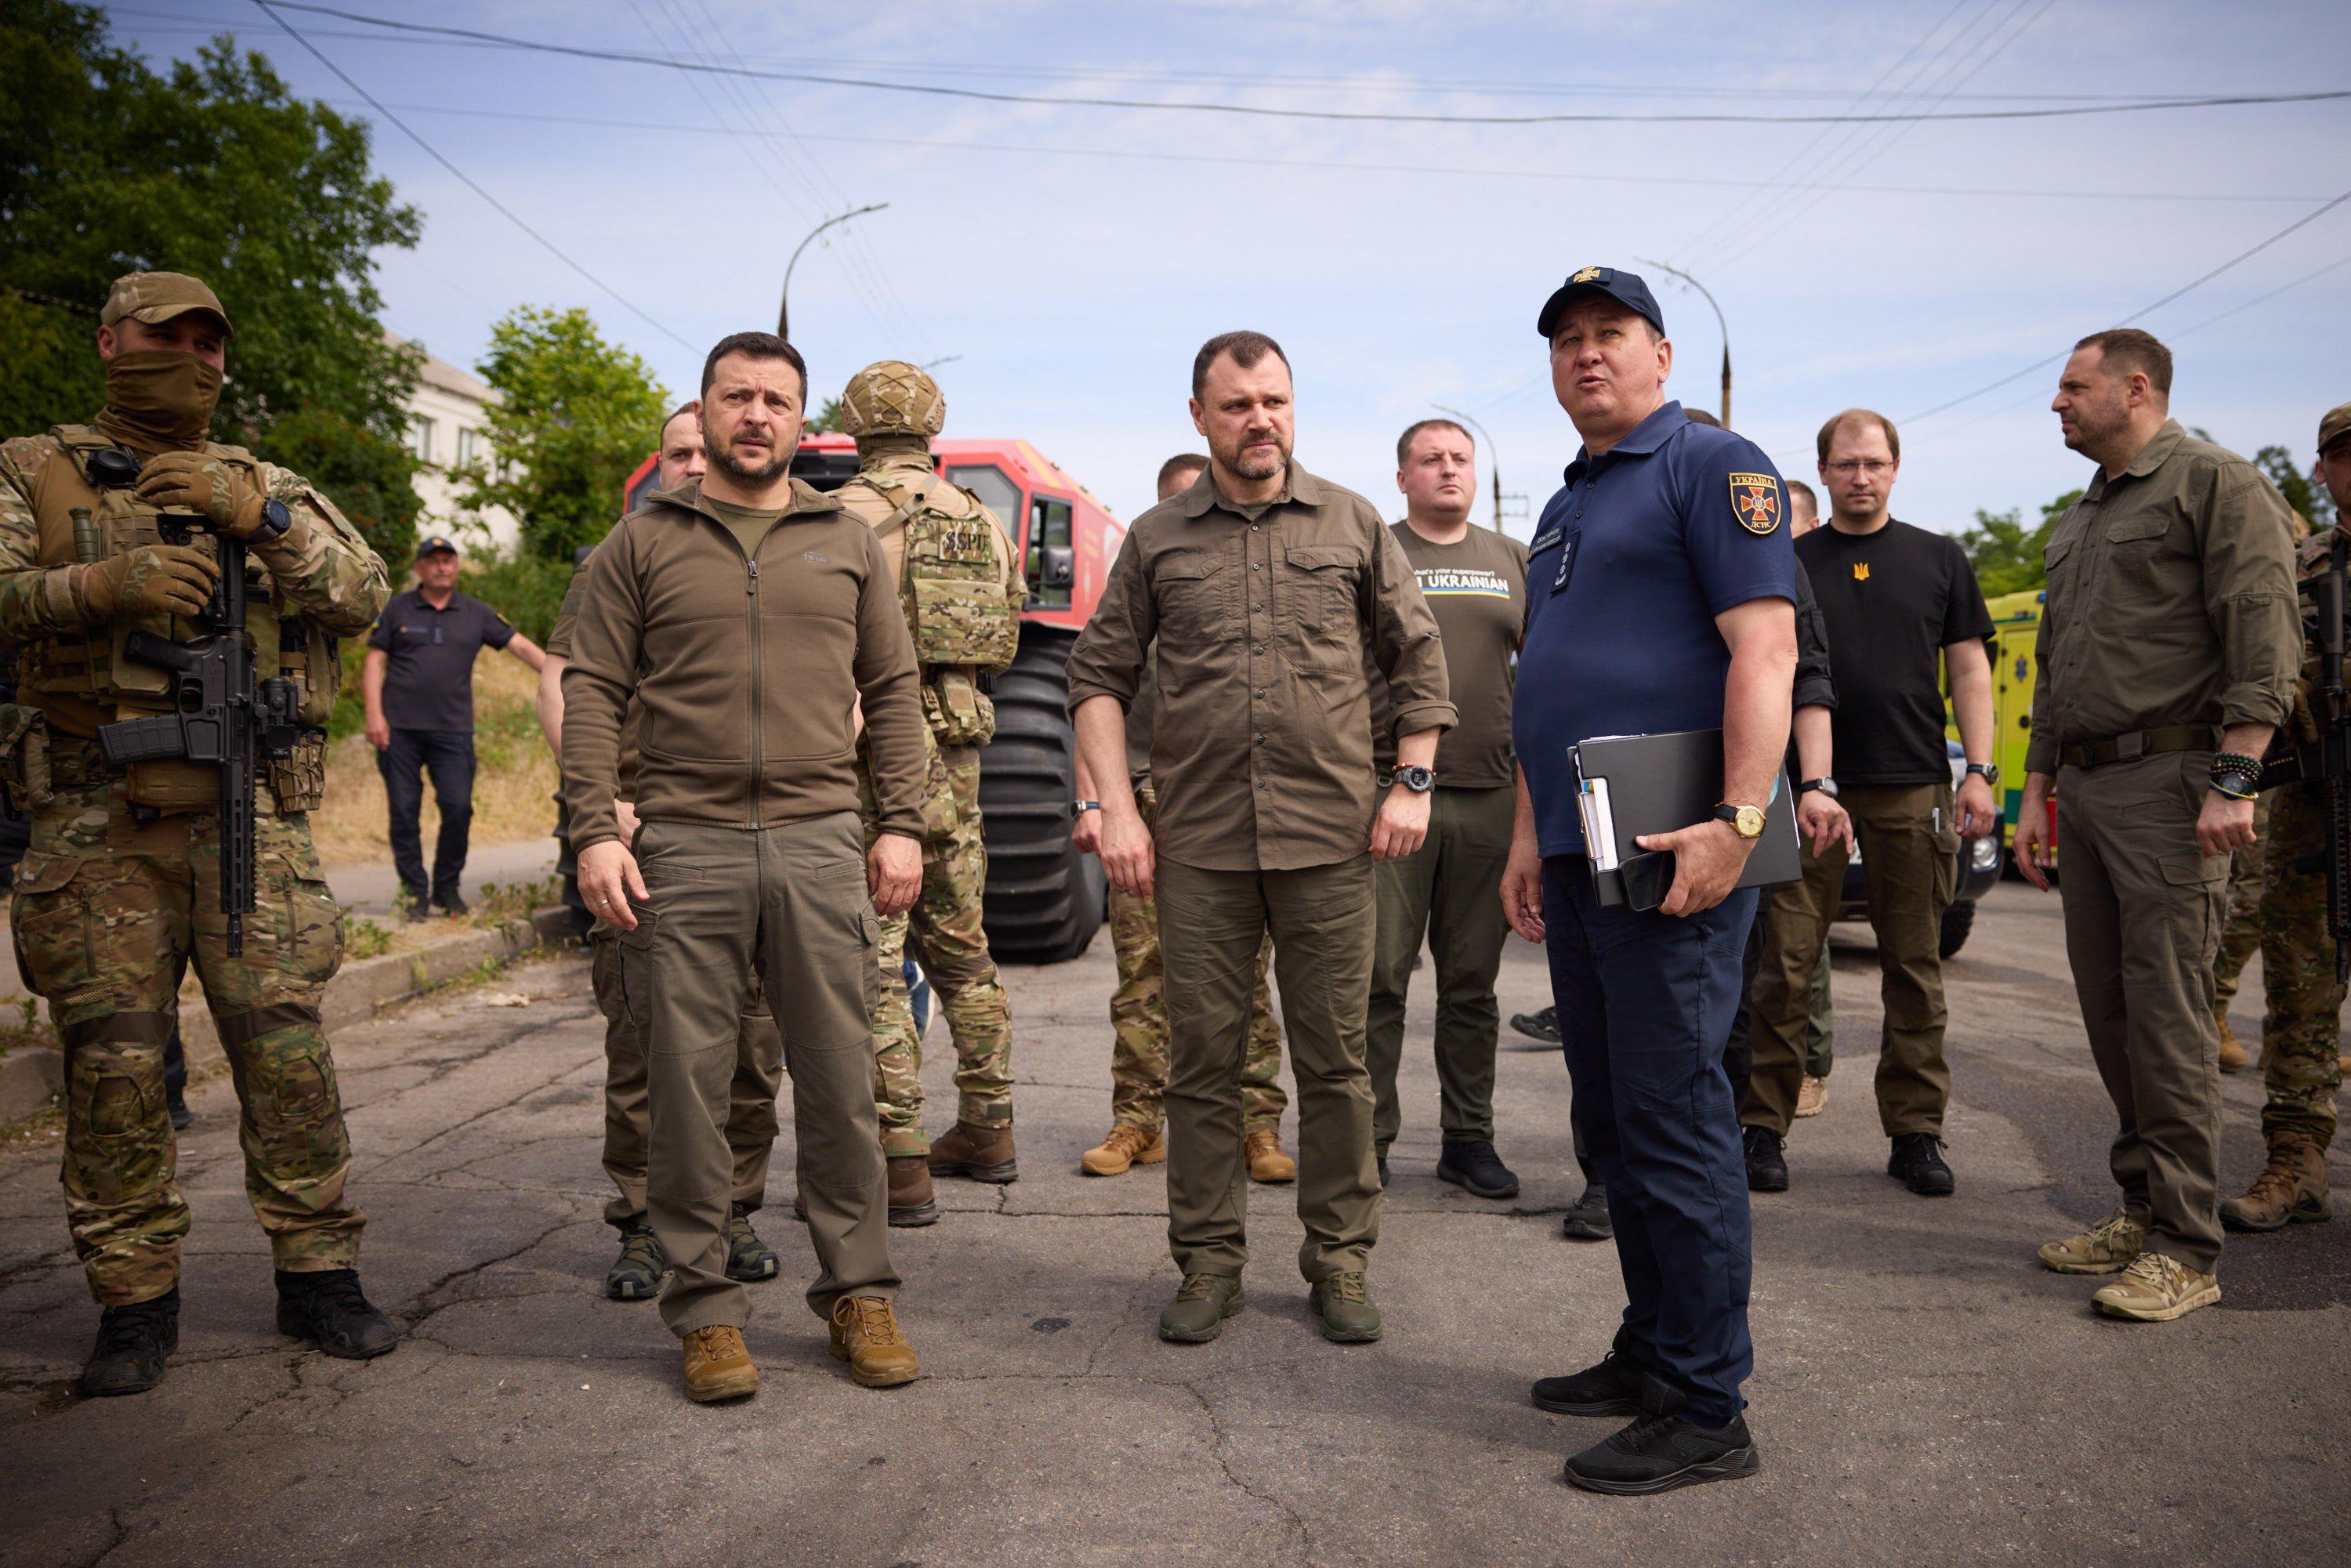 Męzczyźni w polowych mundurach, w tym prezydent Zełenski, patrzą przed siebie